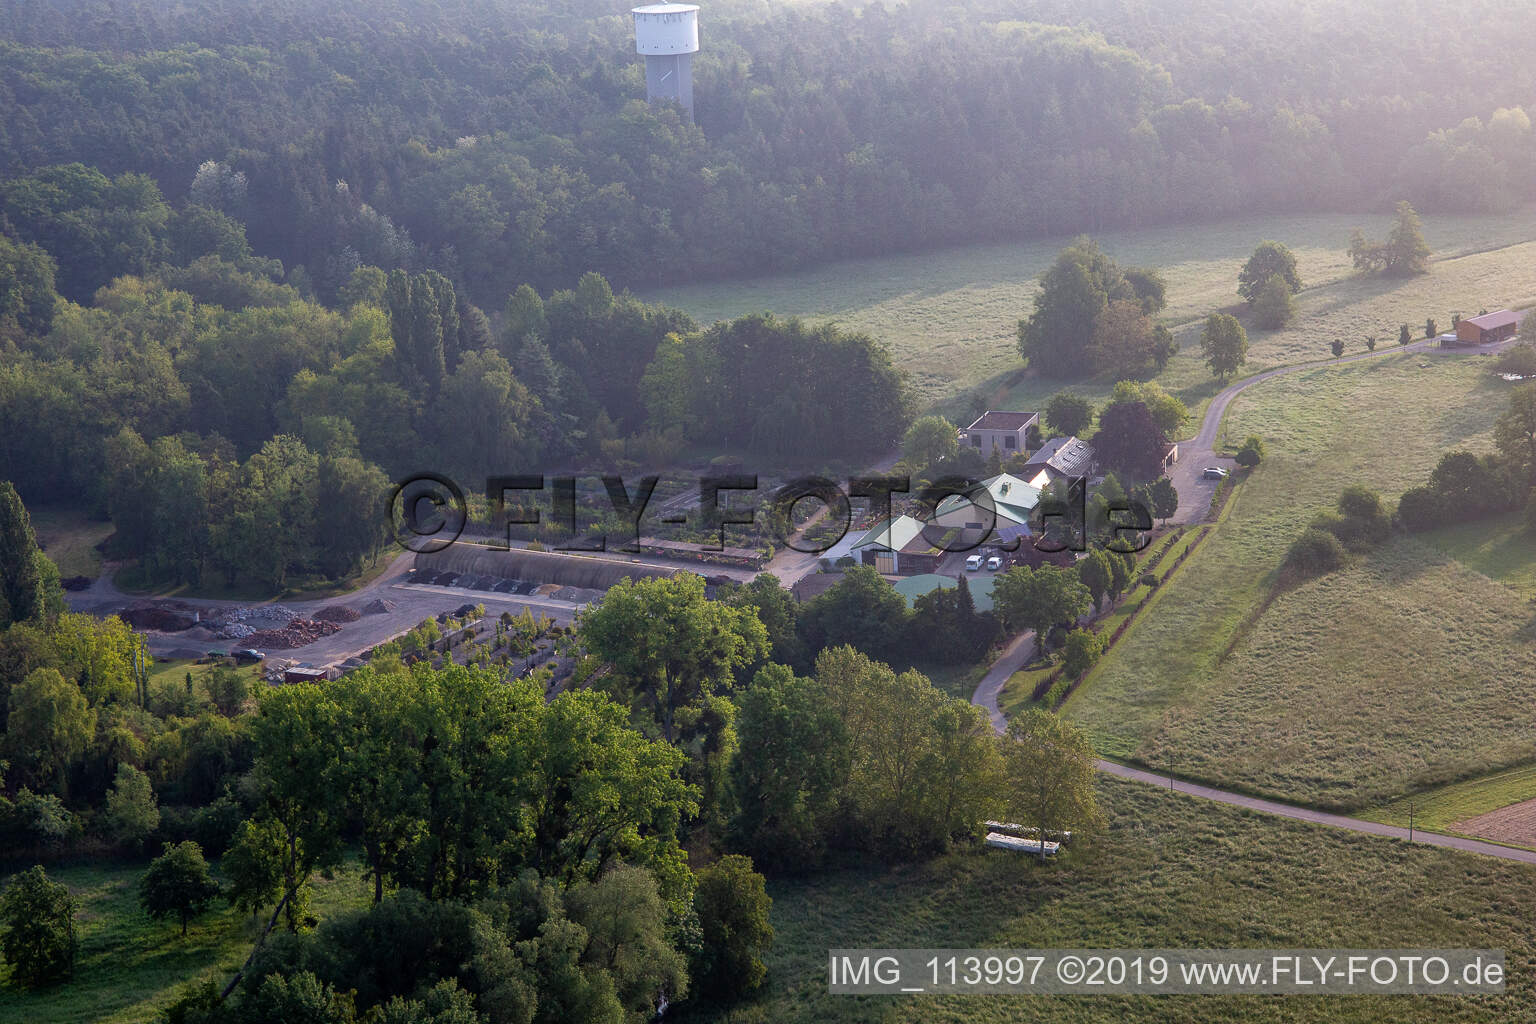 Luftbild von Bienwald Baumschule / Greentec in Berg im Bundesland Rheinland-Pfalz, Deutschland